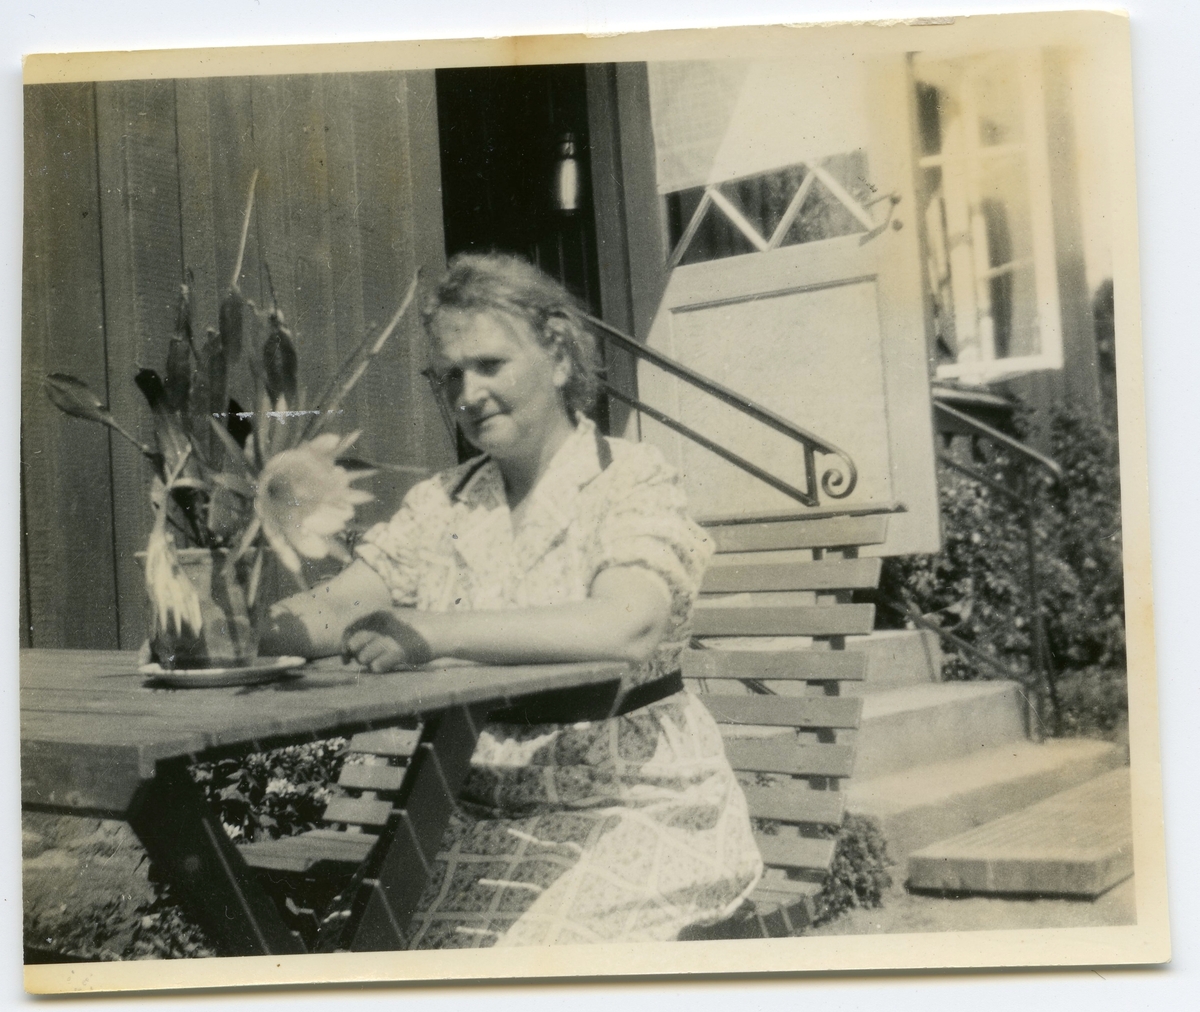 Nora Krantz (1879 - 1955) sitter utanför sin bostad, Stretereds personalbostad "Gula Trähuset" på Tulebovägen 23-27, 1930-tal. Hon var gift med skomakare/lärare Carl Krantz, båda anställda på Stretereds skolhem.